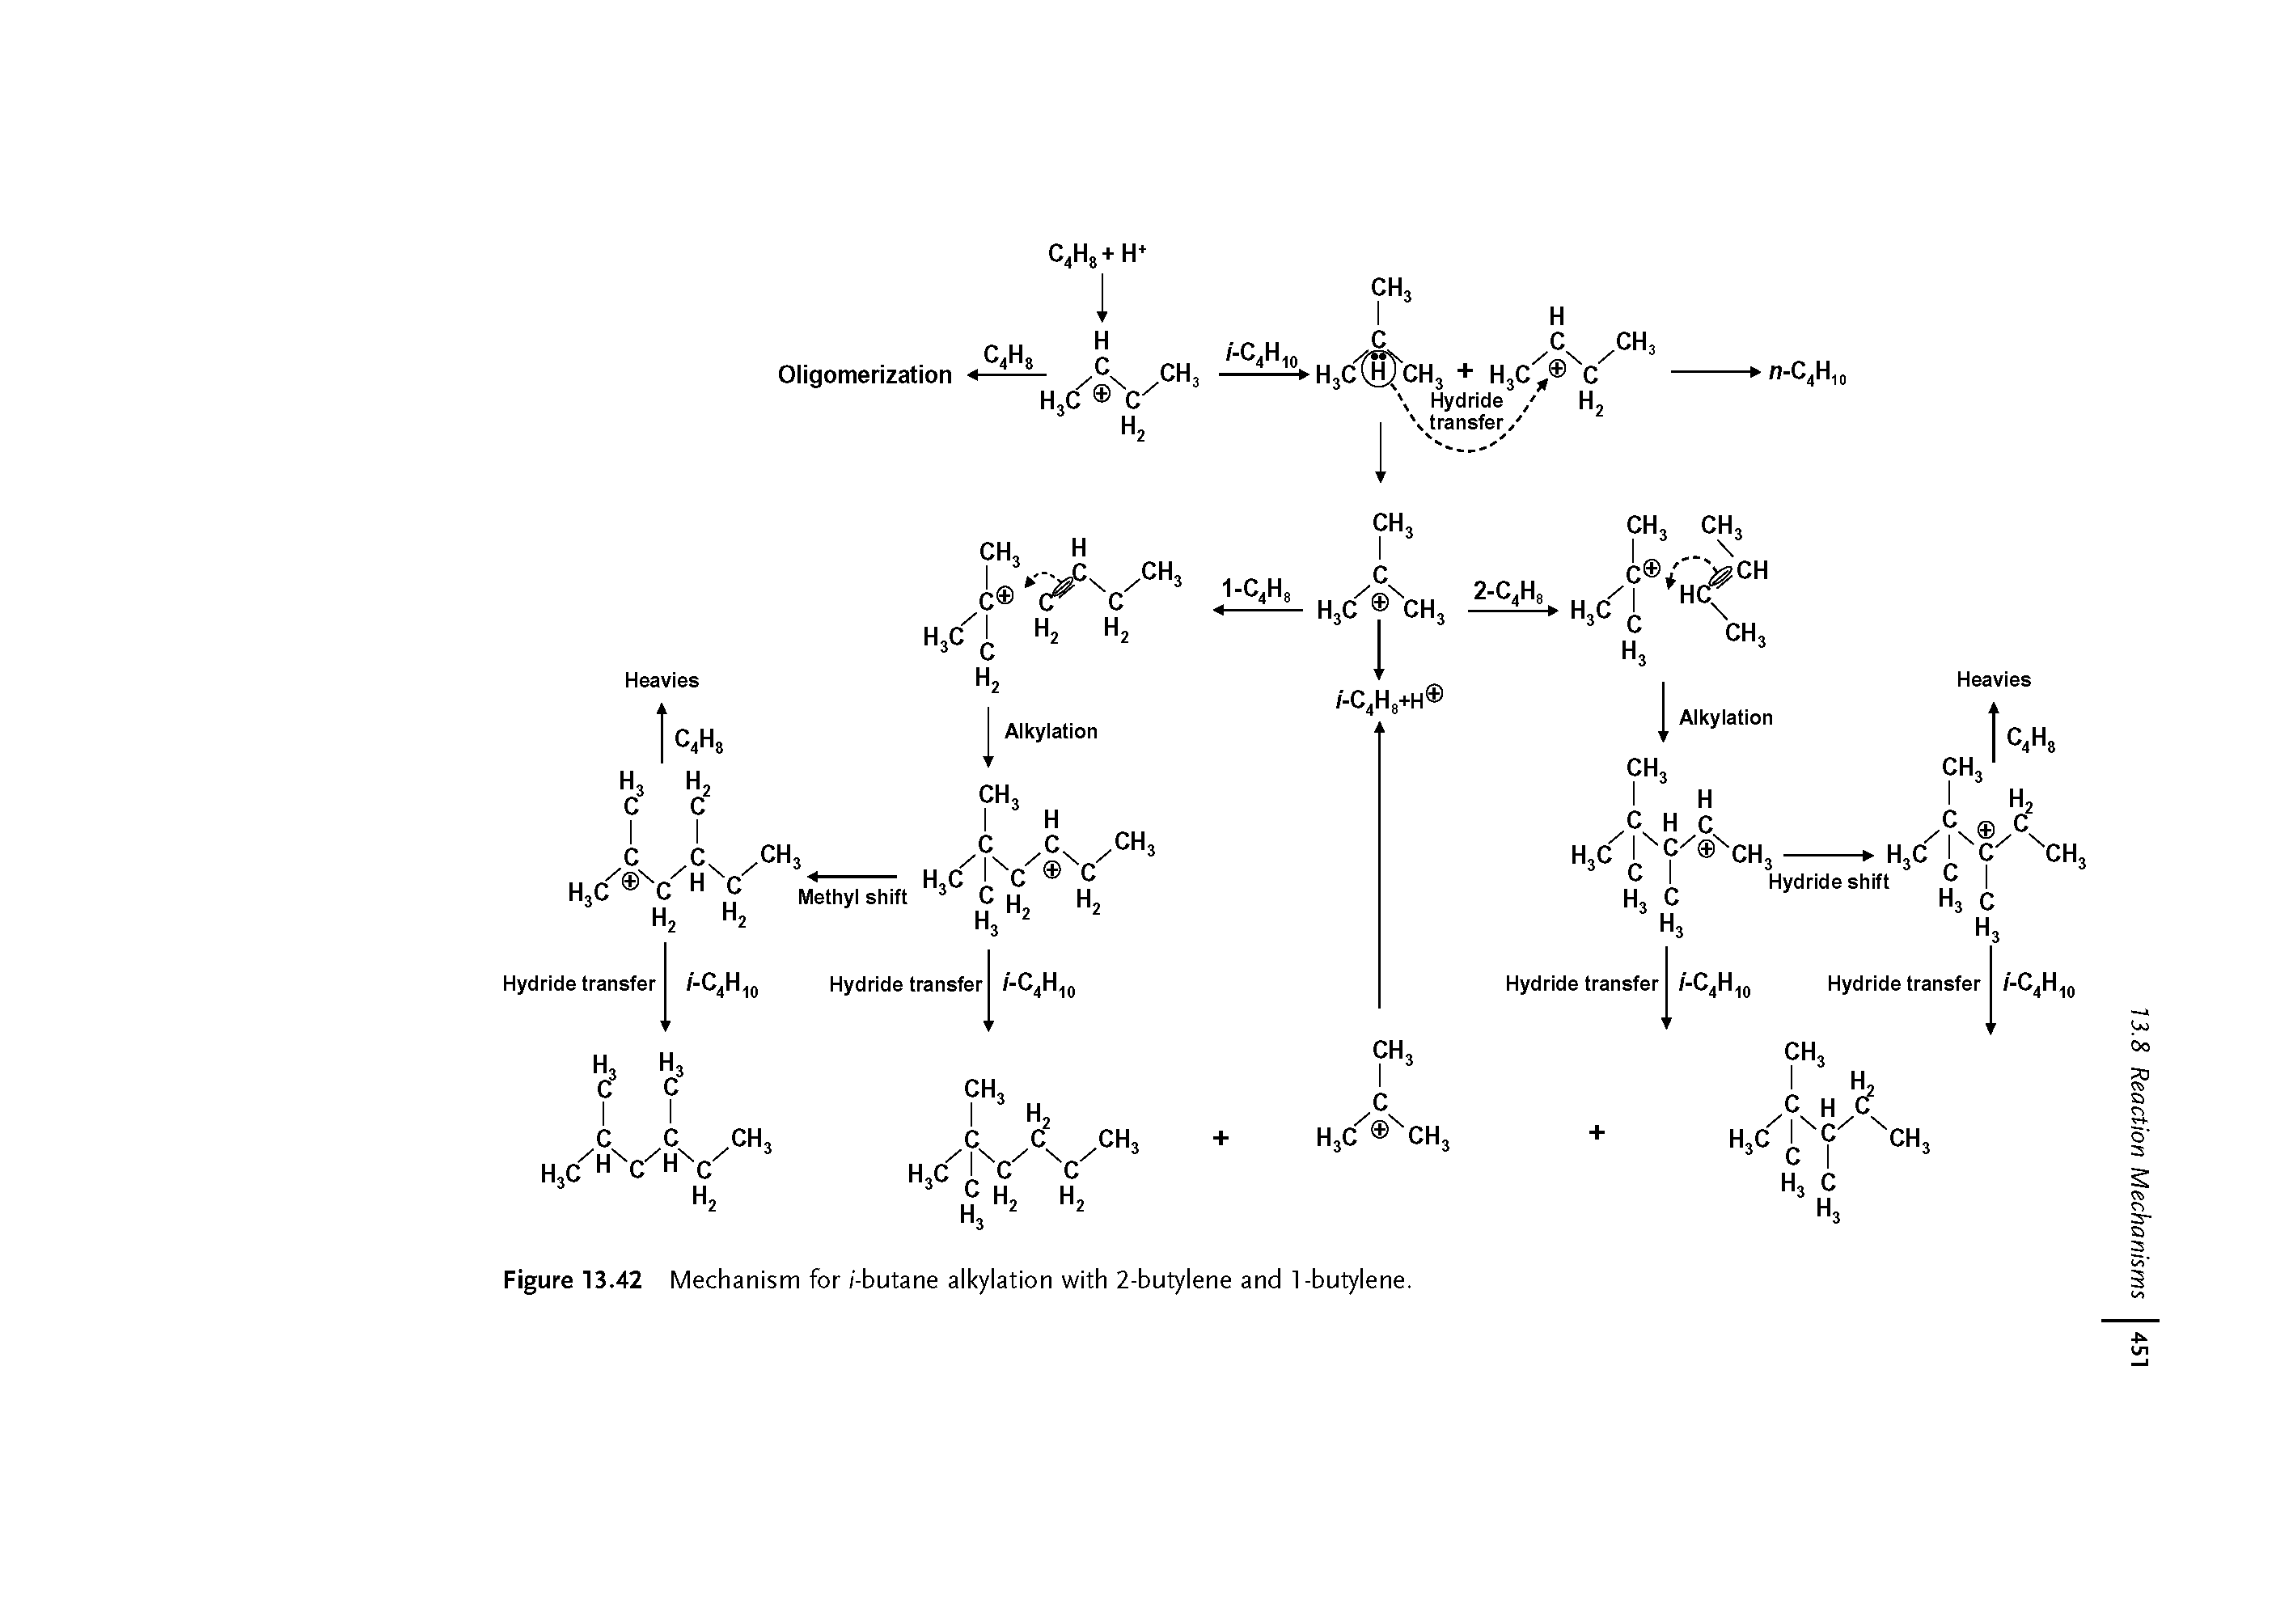 Figure 13.42 Mechanism for/-butane alkylation with 2-butylene and 1-butylene.